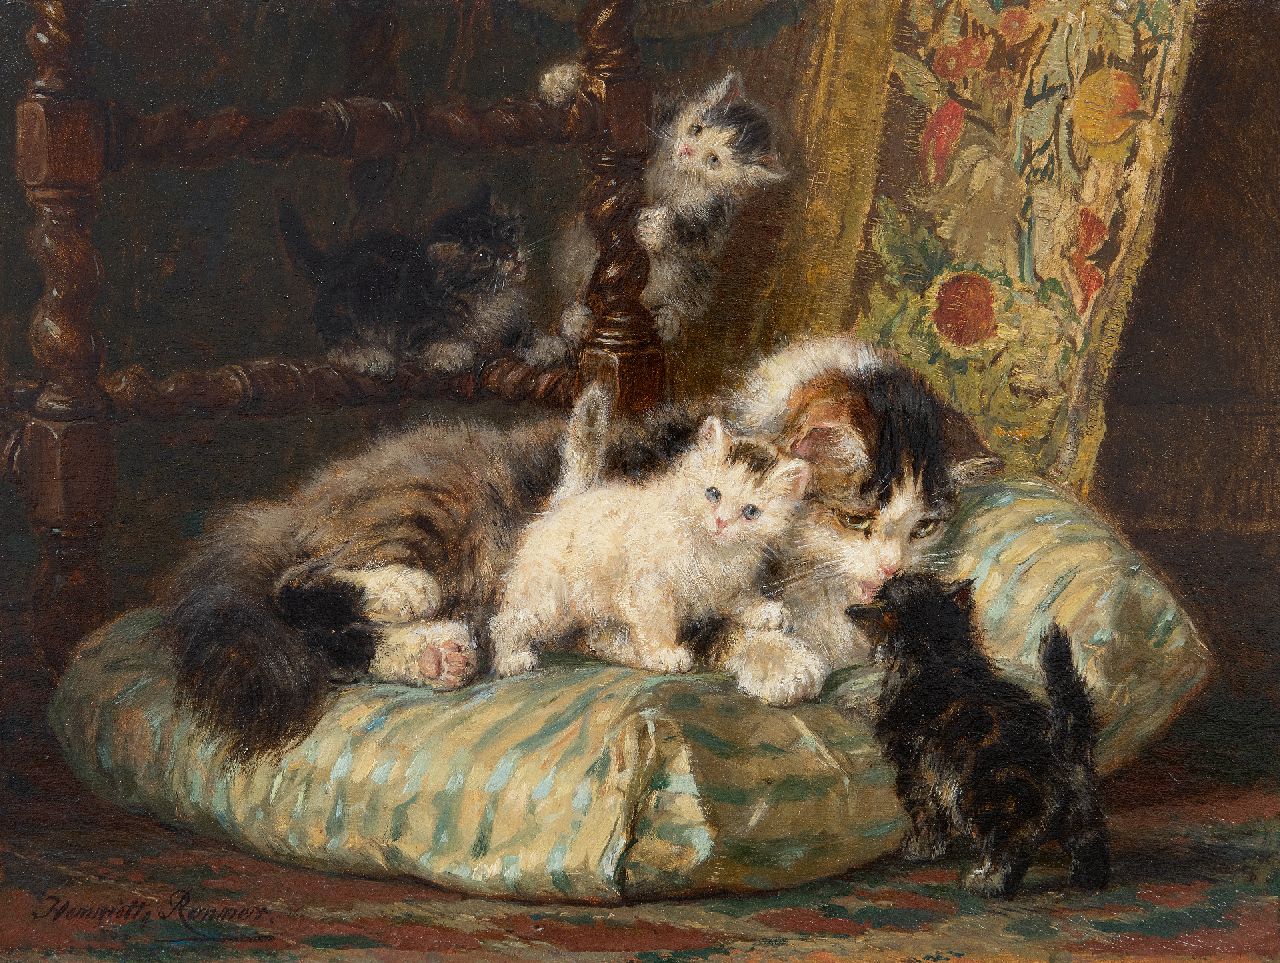 Ronner-Knip H.  | Henriette Ronner-Knip, Moederpoes met vier spelende kittens, olieverf op paneel 24,5 x 32,6 cm, gesigneerd linksonder